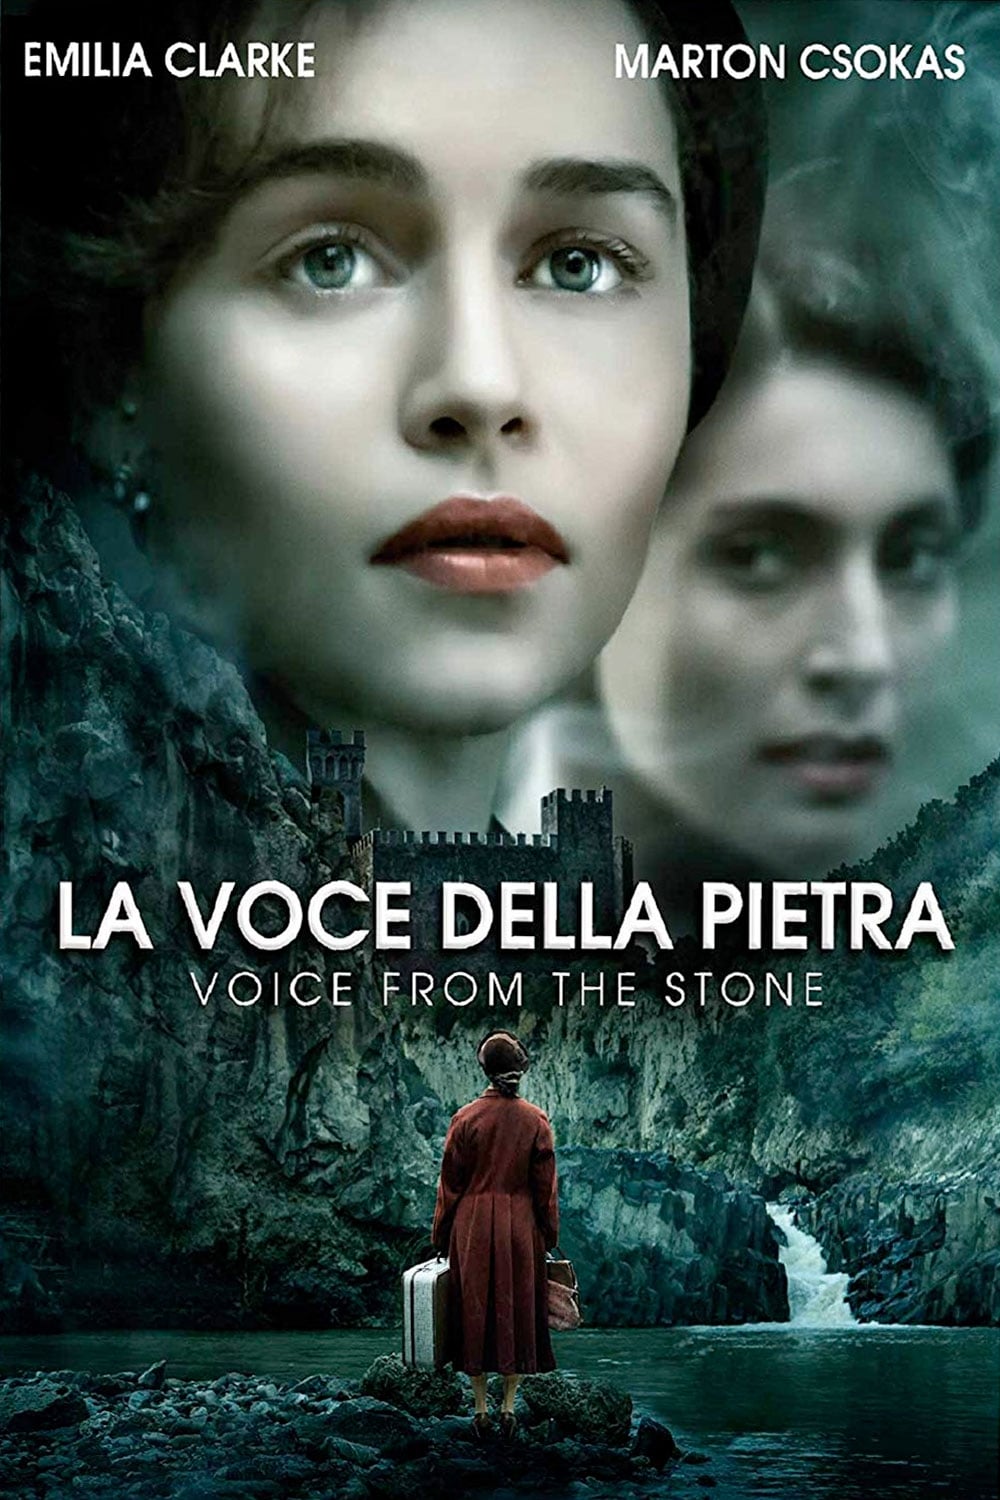 La voce della pietra film